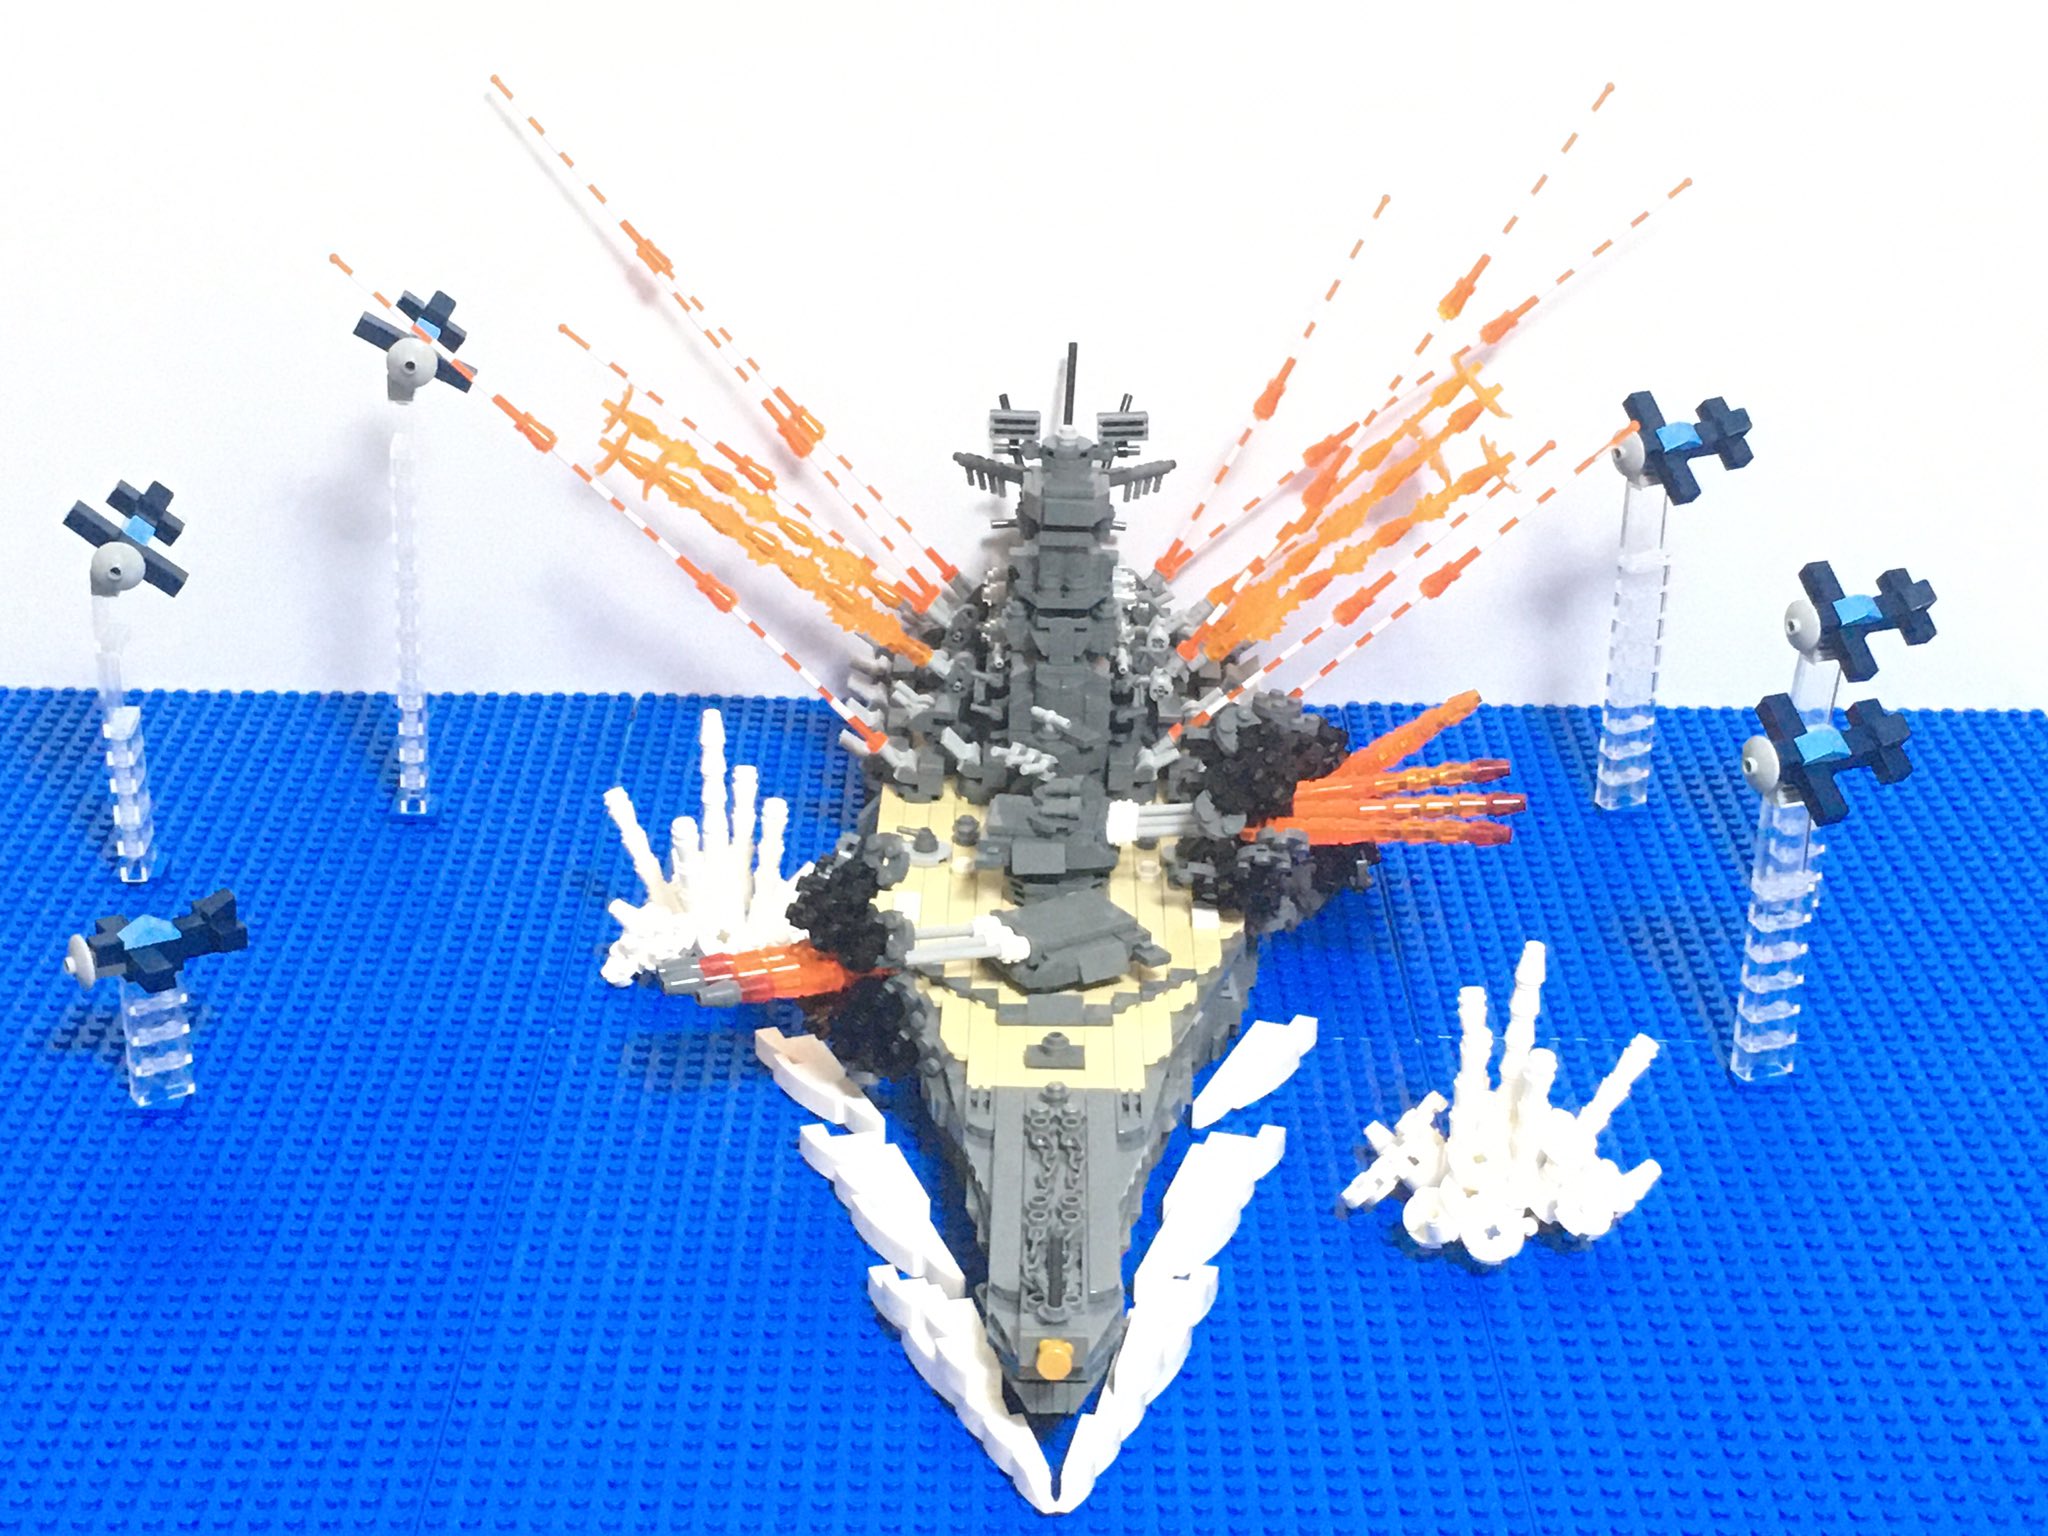 Mizuki 今日は戦艦大和沈没の日 レゴで作った大和 T Co Ez6kikofzu Twitter